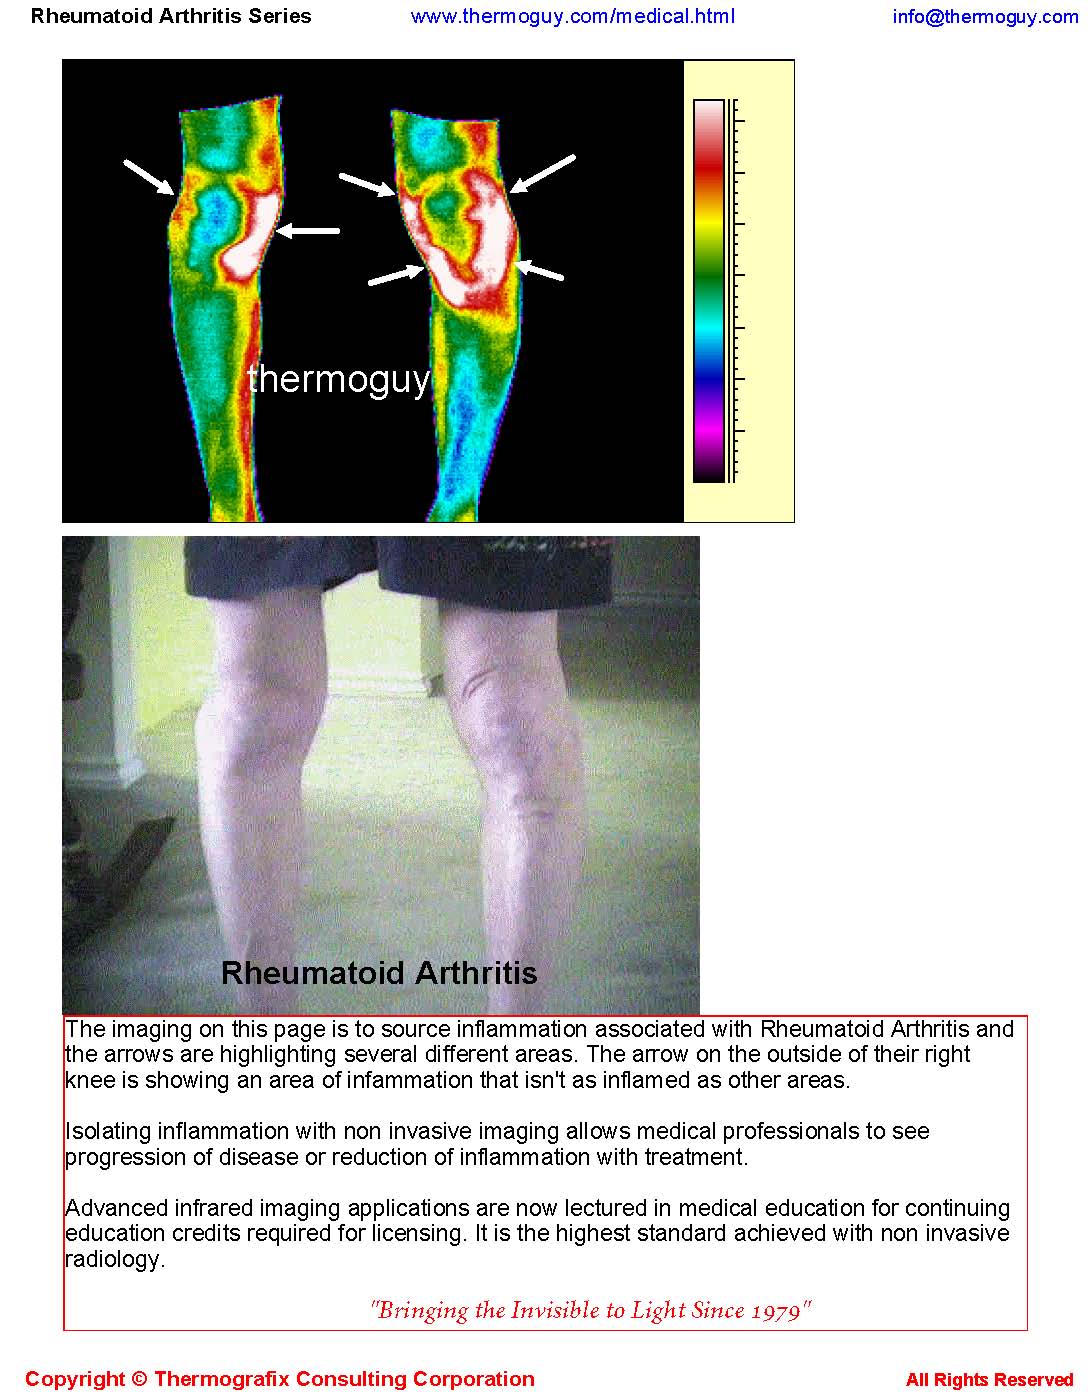 20120915-RHEUMATOID ARTHRITIS SERIES